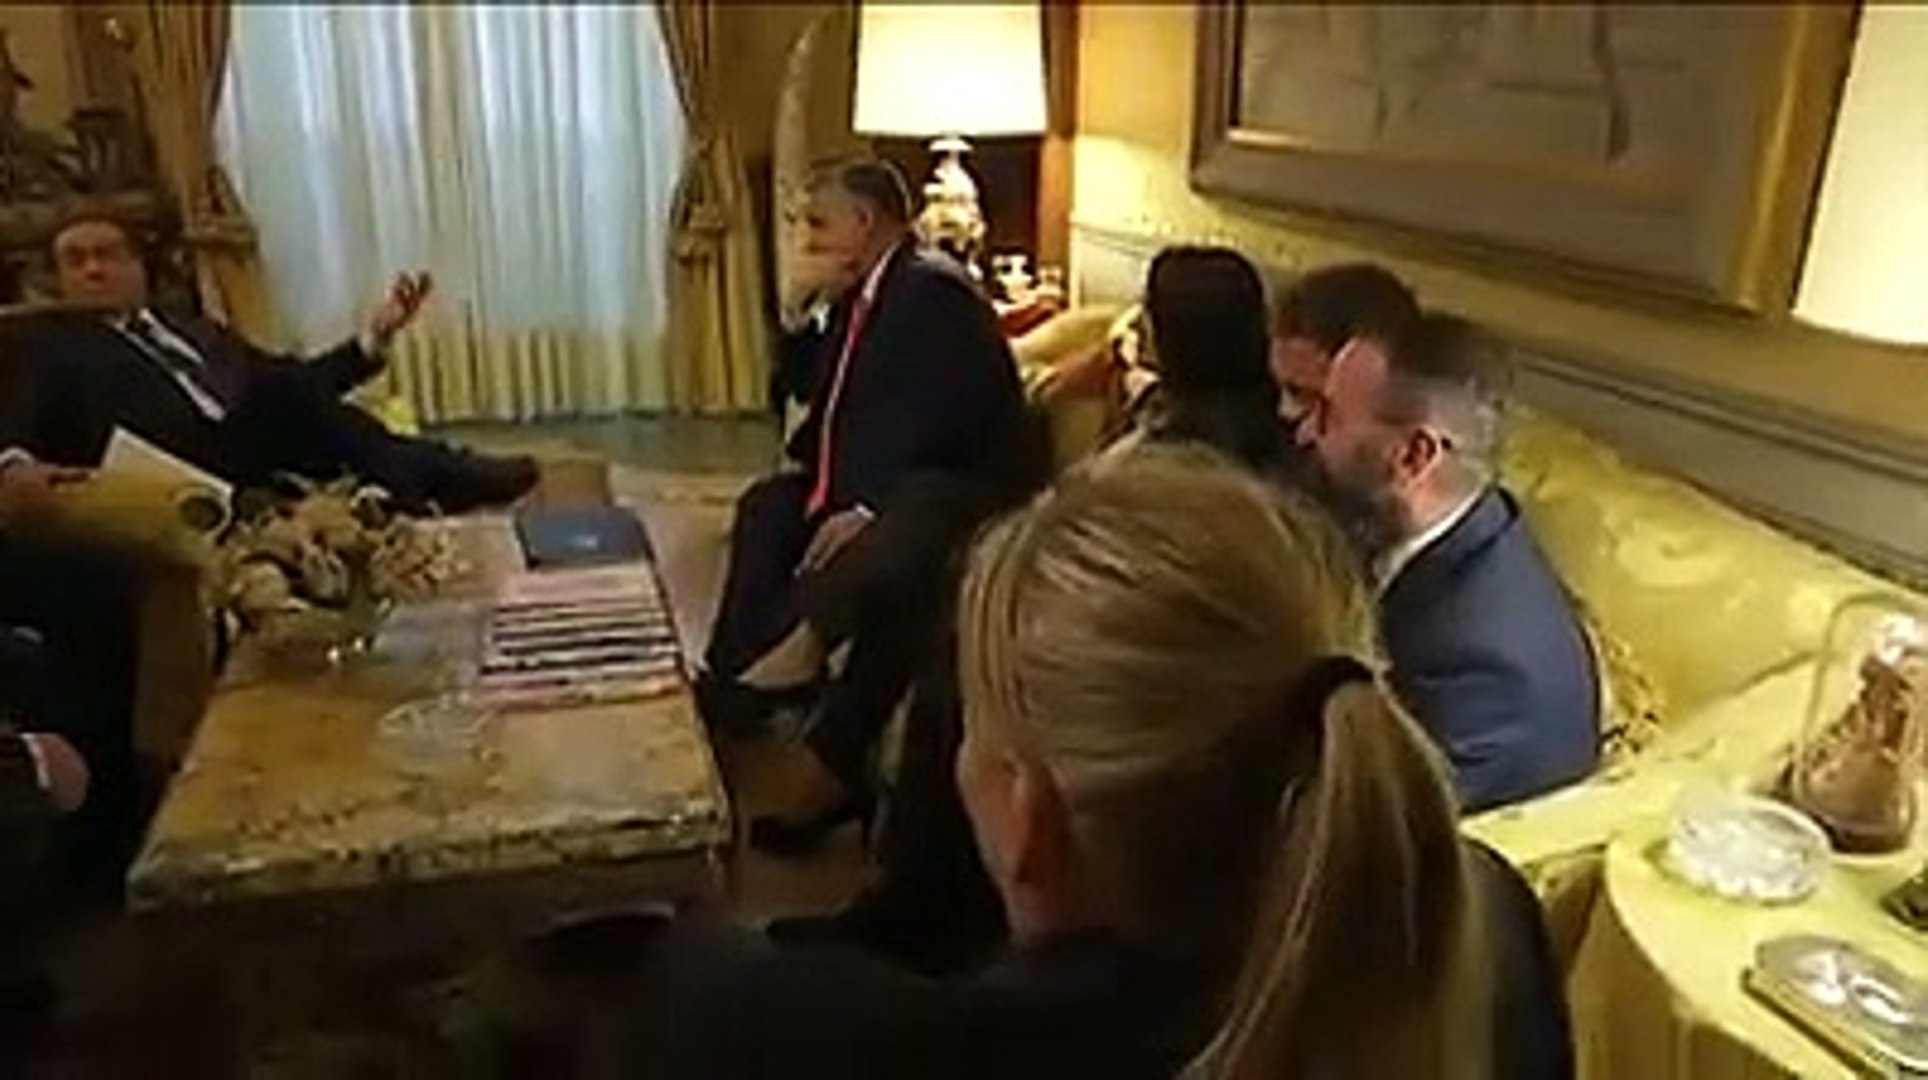 ⁣Berlusconi incontra il primo ministro ungherese Orbán Viktor, leader di Fidesz. (04.02.20)